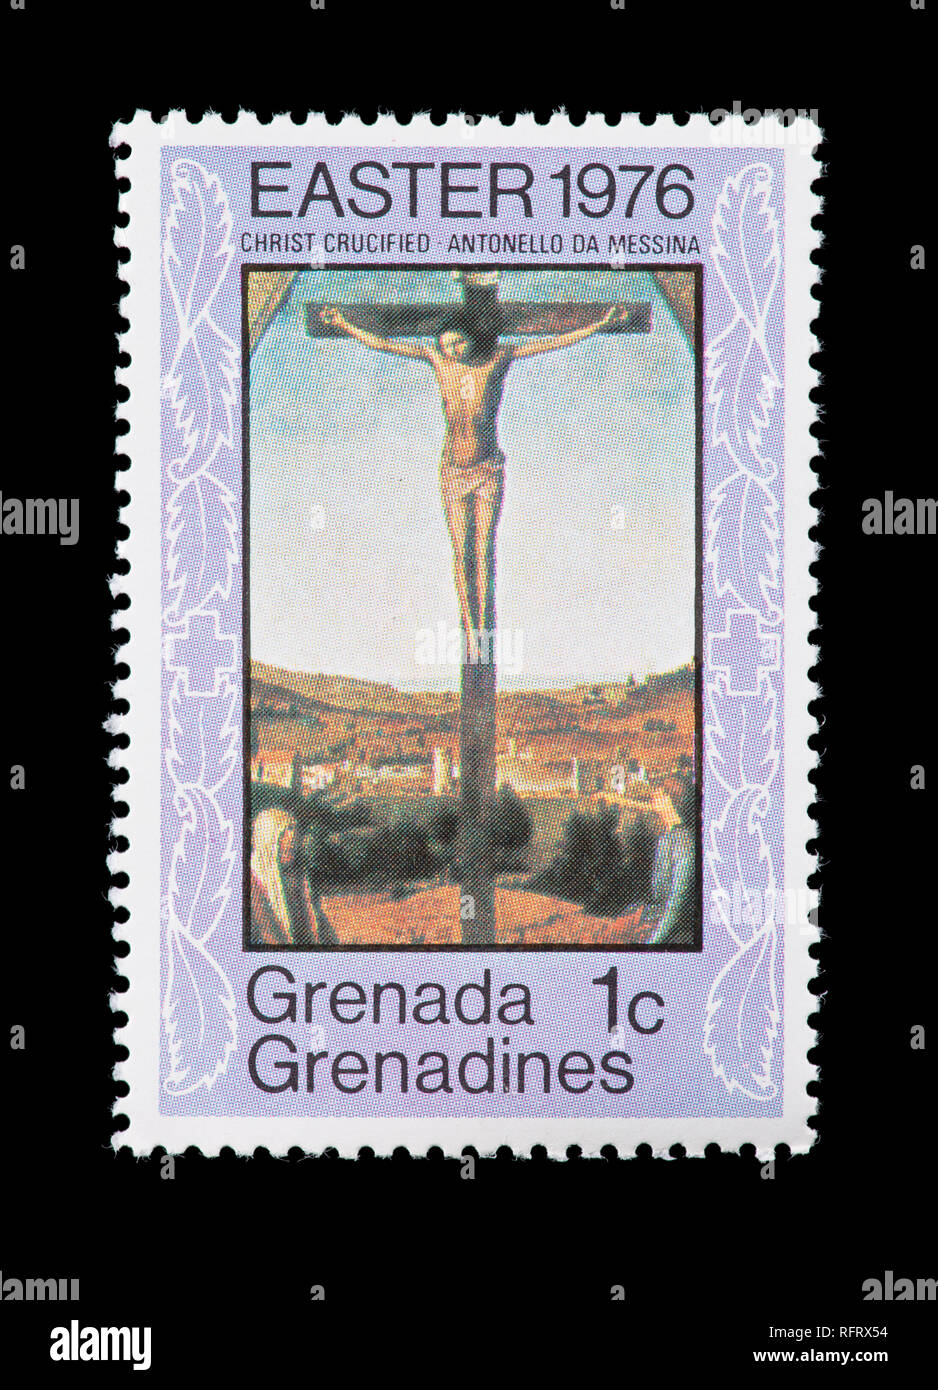 Francobollo da Grenada e Grenadine raffigurante il Antonello da Messina pittura del Cristo crocifisso. Foto Stock